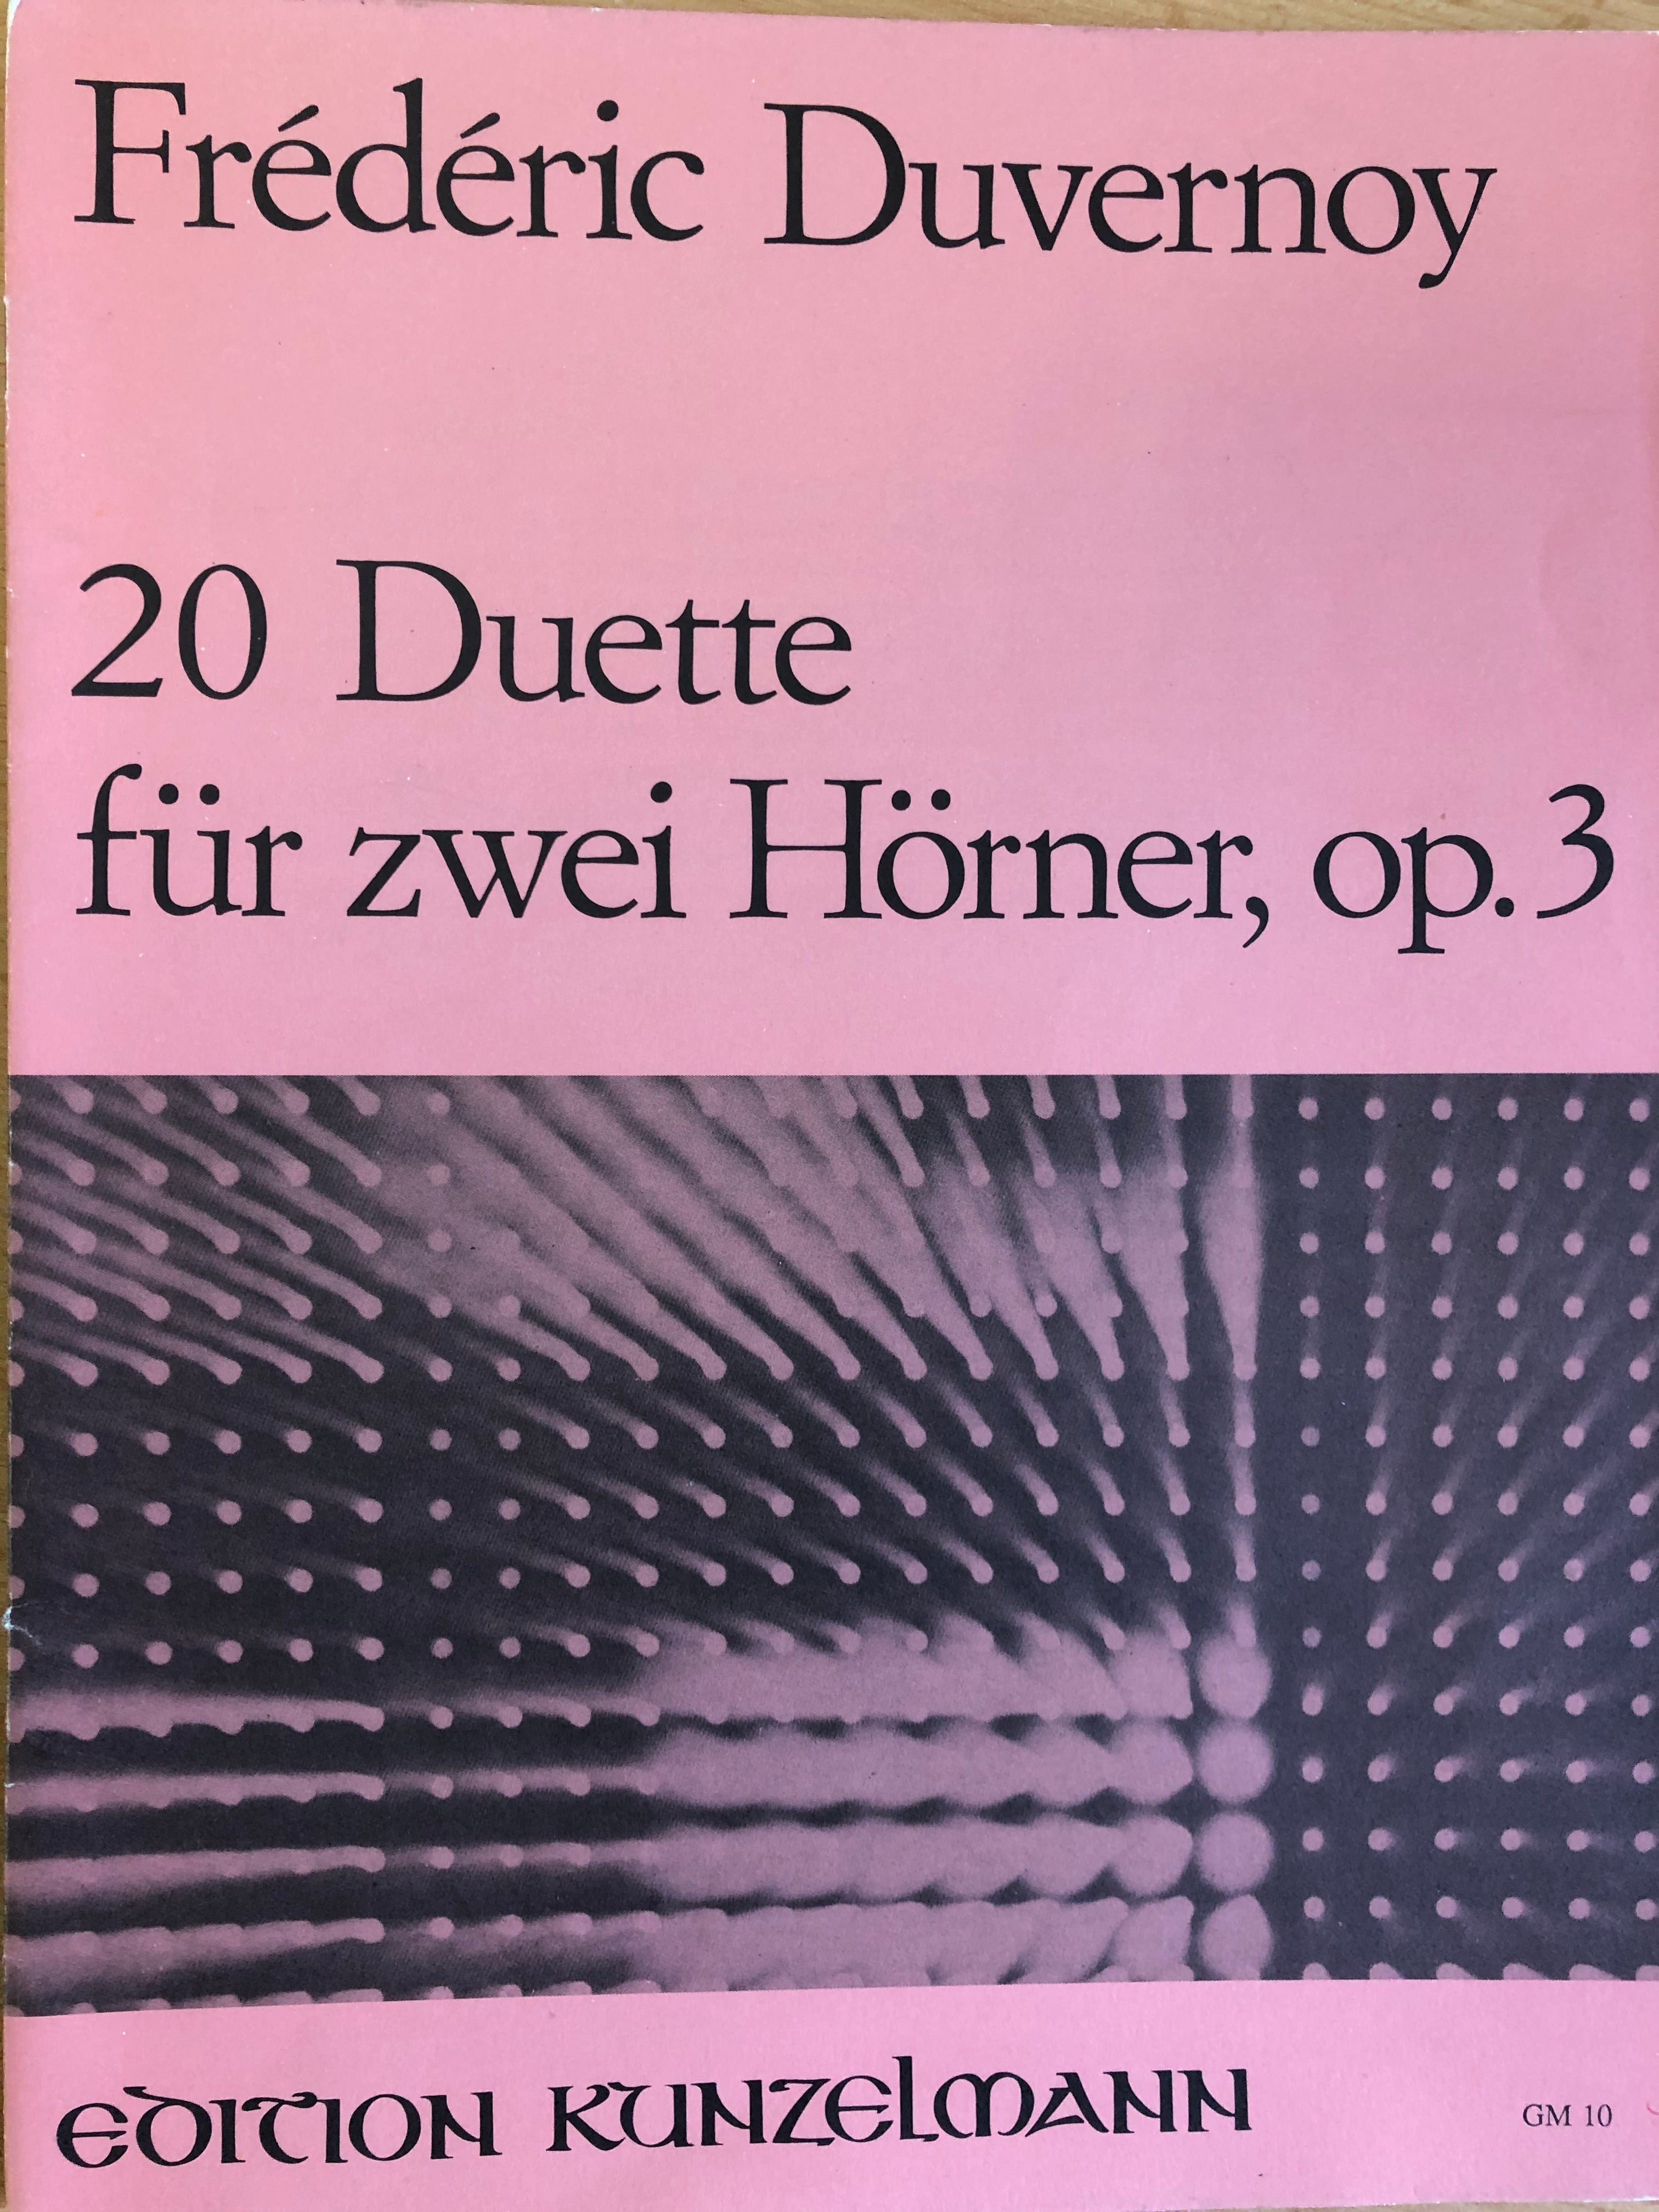 20 Duetten für zwei Hörner, Duvernoy - Scattando Verkleedhuis